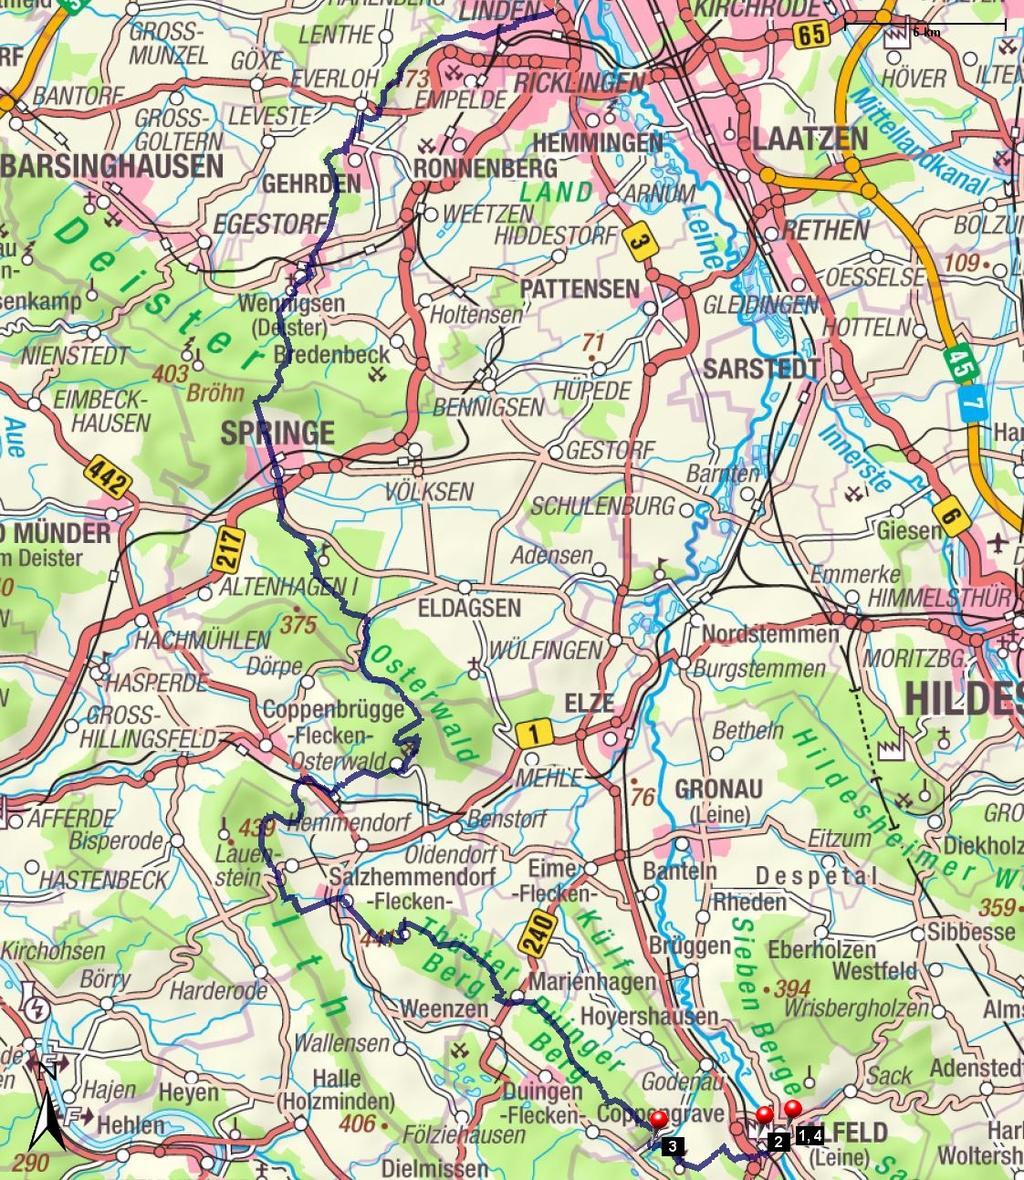 Länge: Start: Hannover-Badenstzedt Steigung: + 2348 m / - 2355 m 82,91 km